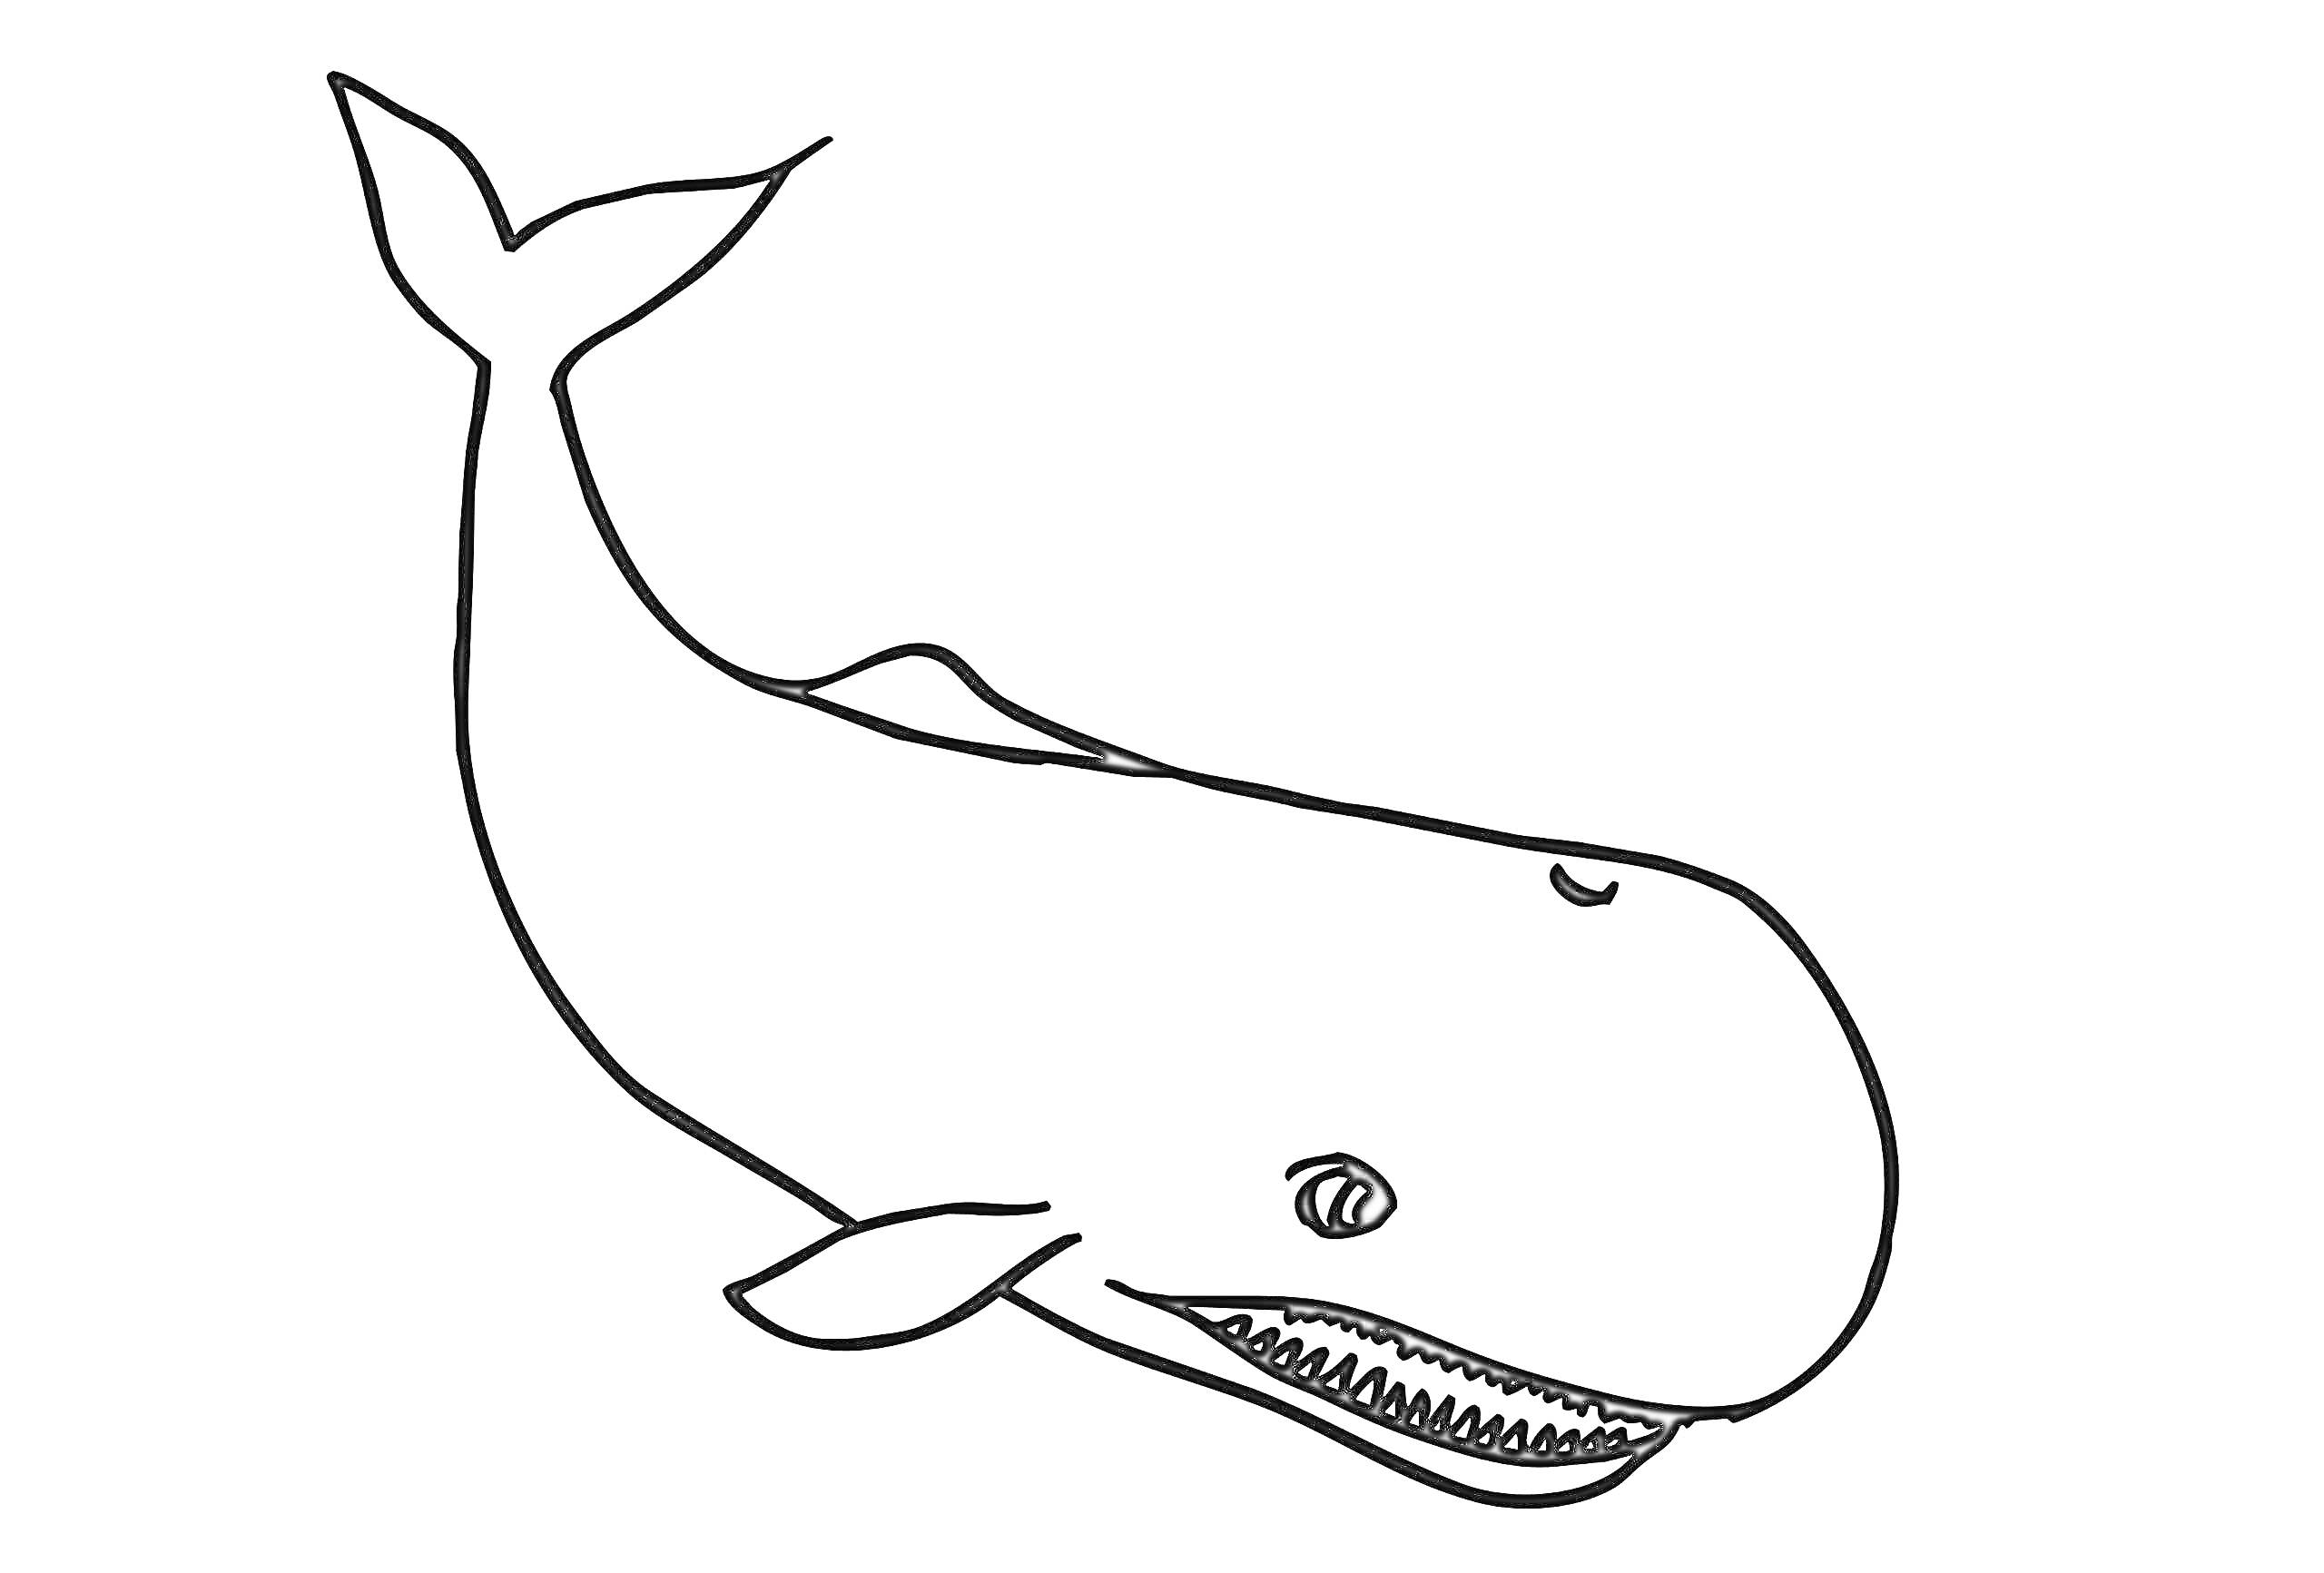 Раскраска Кит с улыбкой. Изображен один большой кит с длинным телом, плавниками, большим глазом и открытым ртом с зубами, гребнем на спине и хвостом.